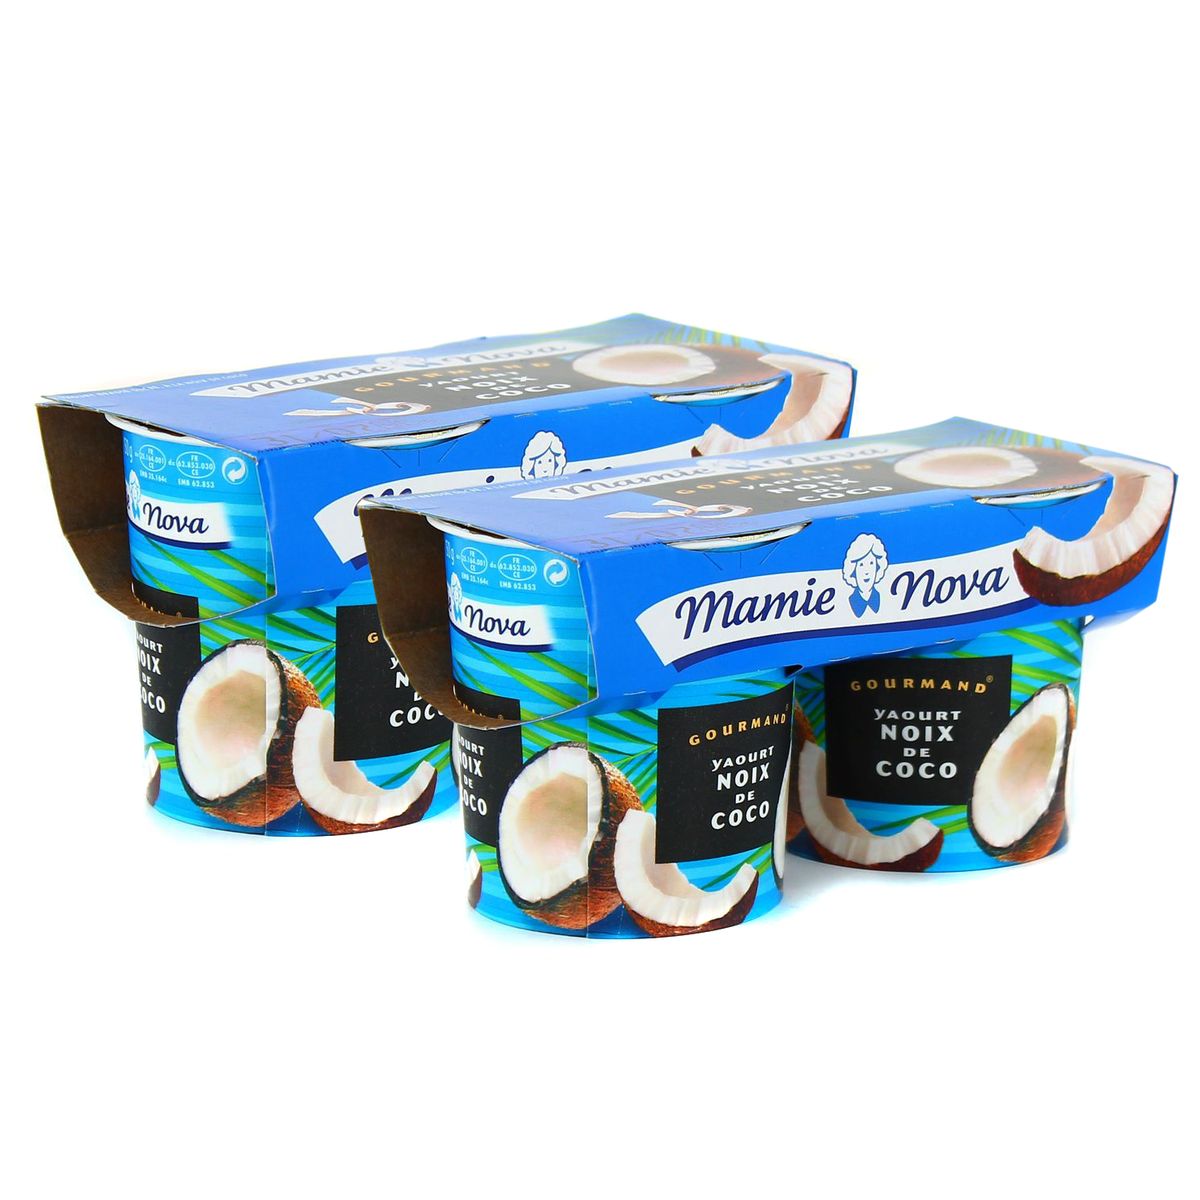 Les yaourts Evasion de Mamie Nova